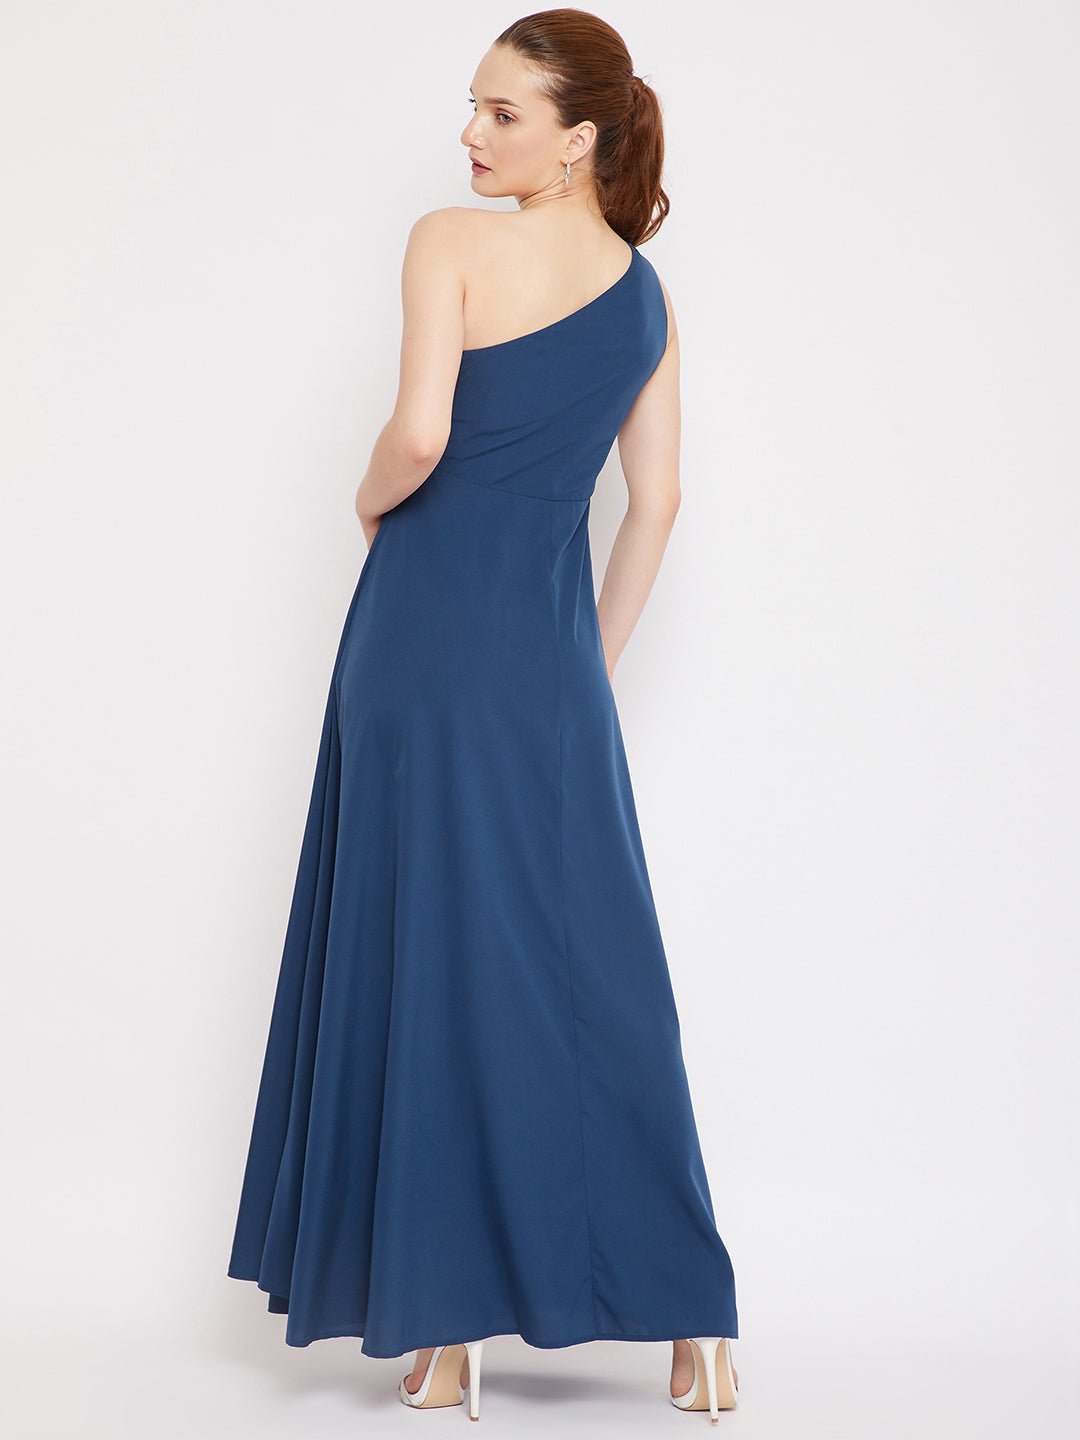 Folk Republic Women Solid Blue One-Shoulder Neck Thigh-High Slit Flared Maxi Dress - #folk republic#